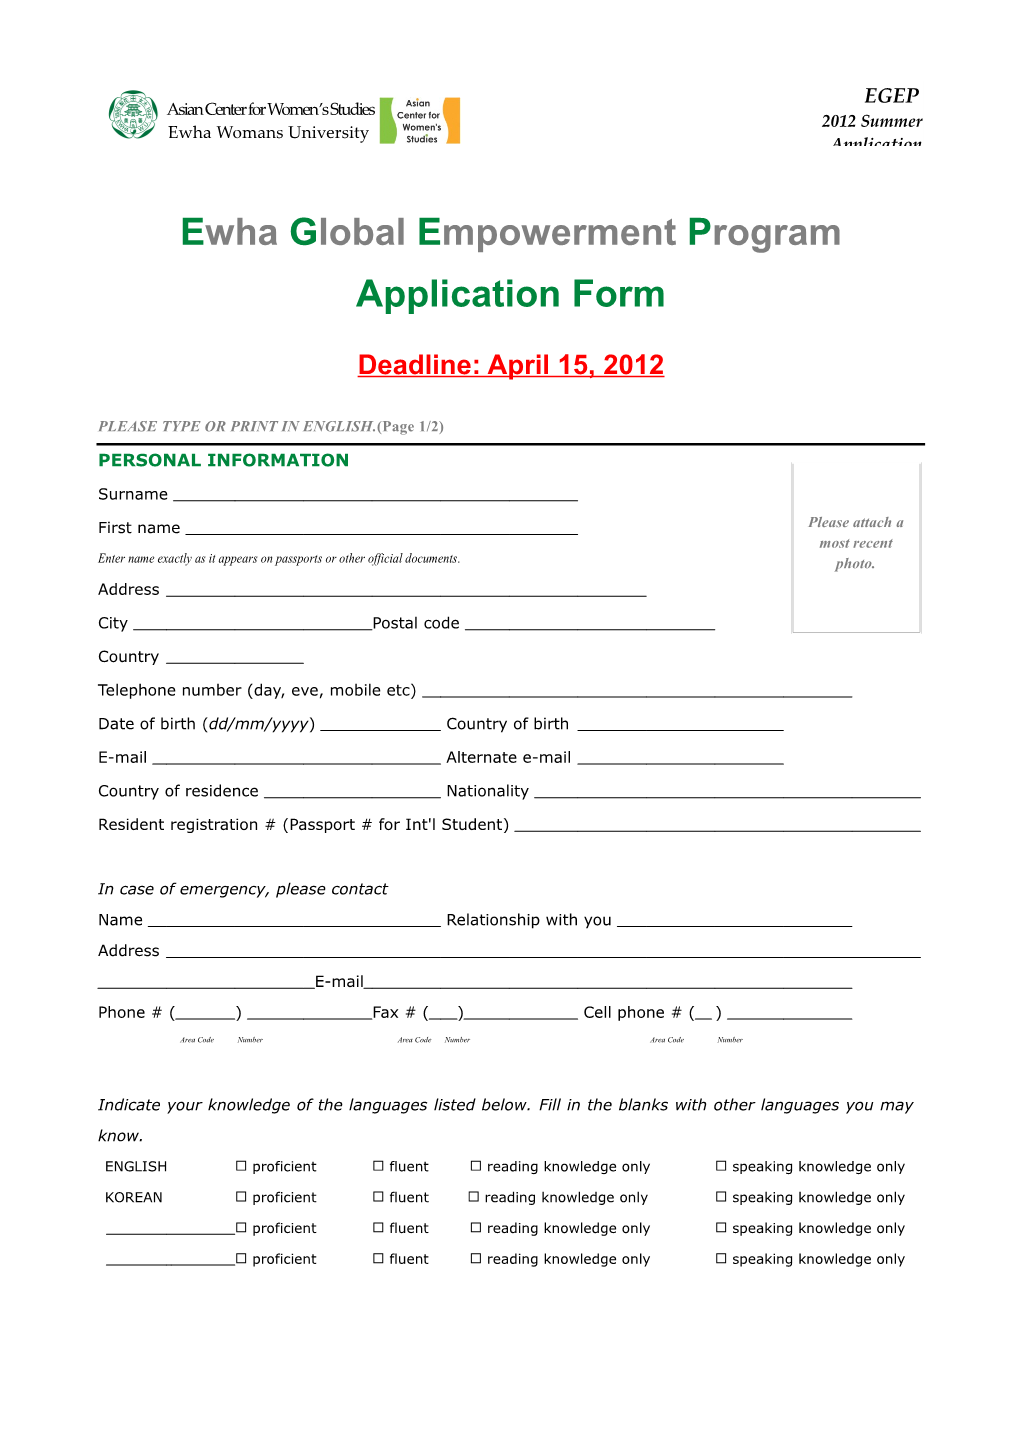 EGEP Application Form